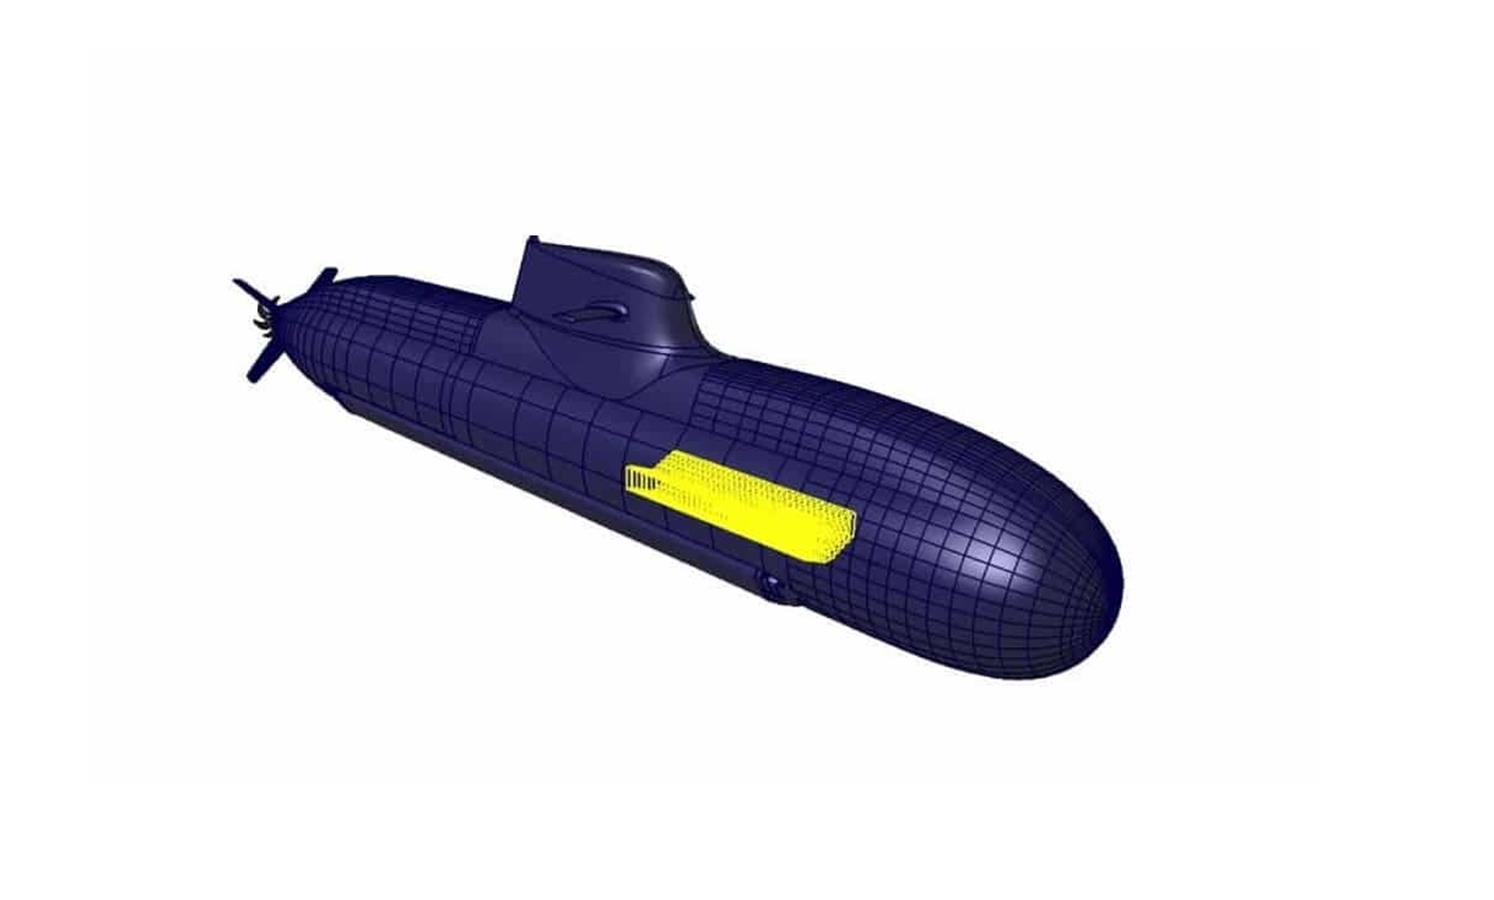 Akumulatory dla okrętów podwodnych projektu U212 NFS już po przeglądzie projektu